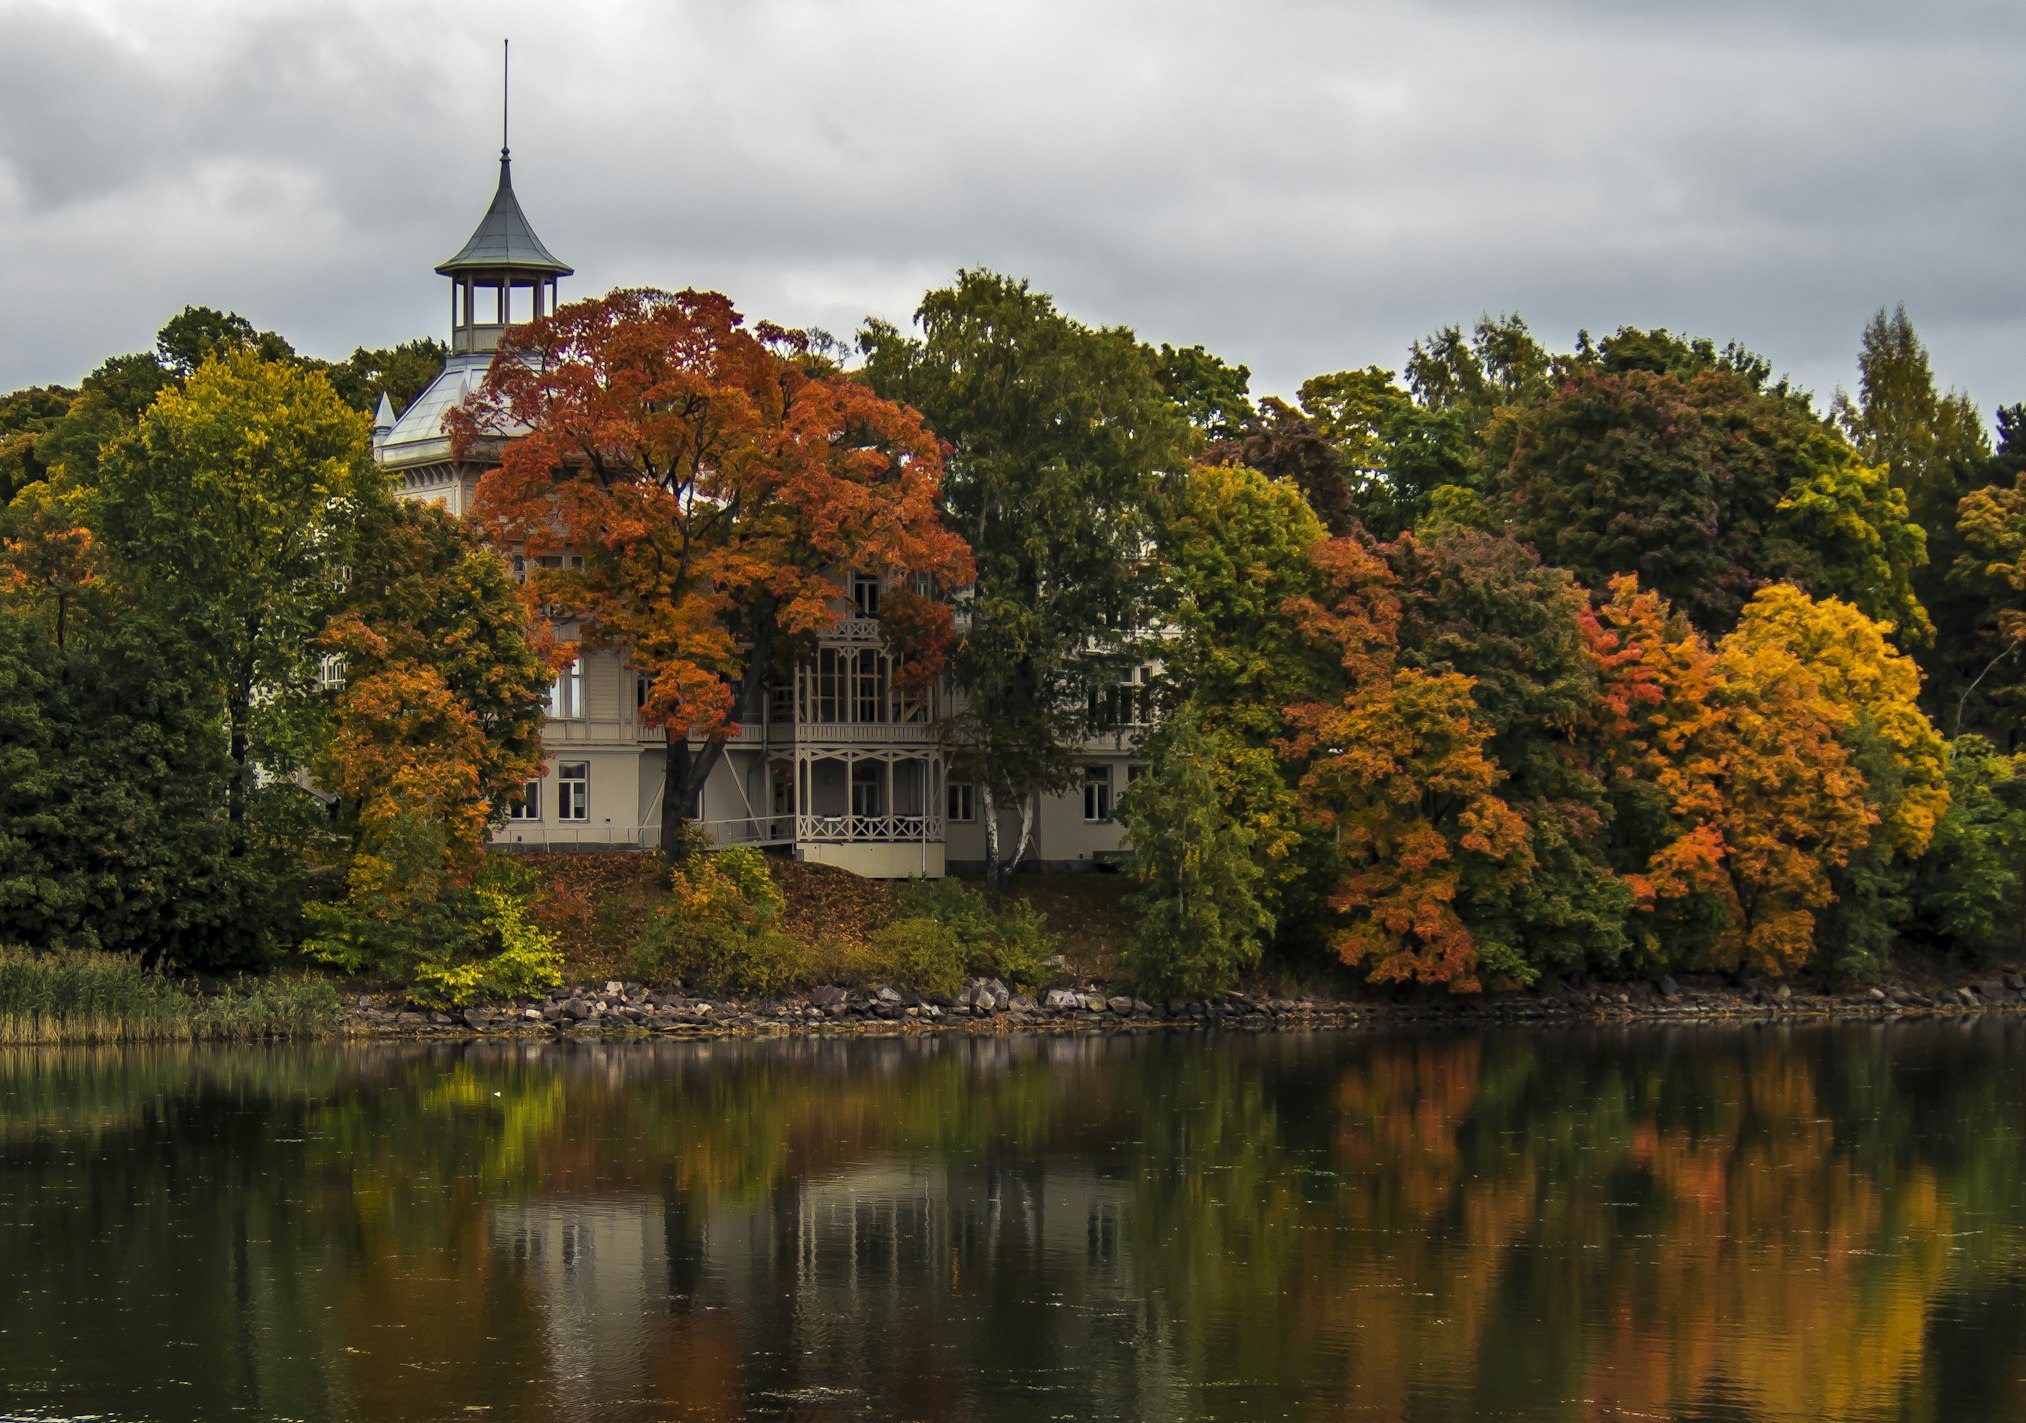 Autumn in Toolonlahti Helsinki, Finland